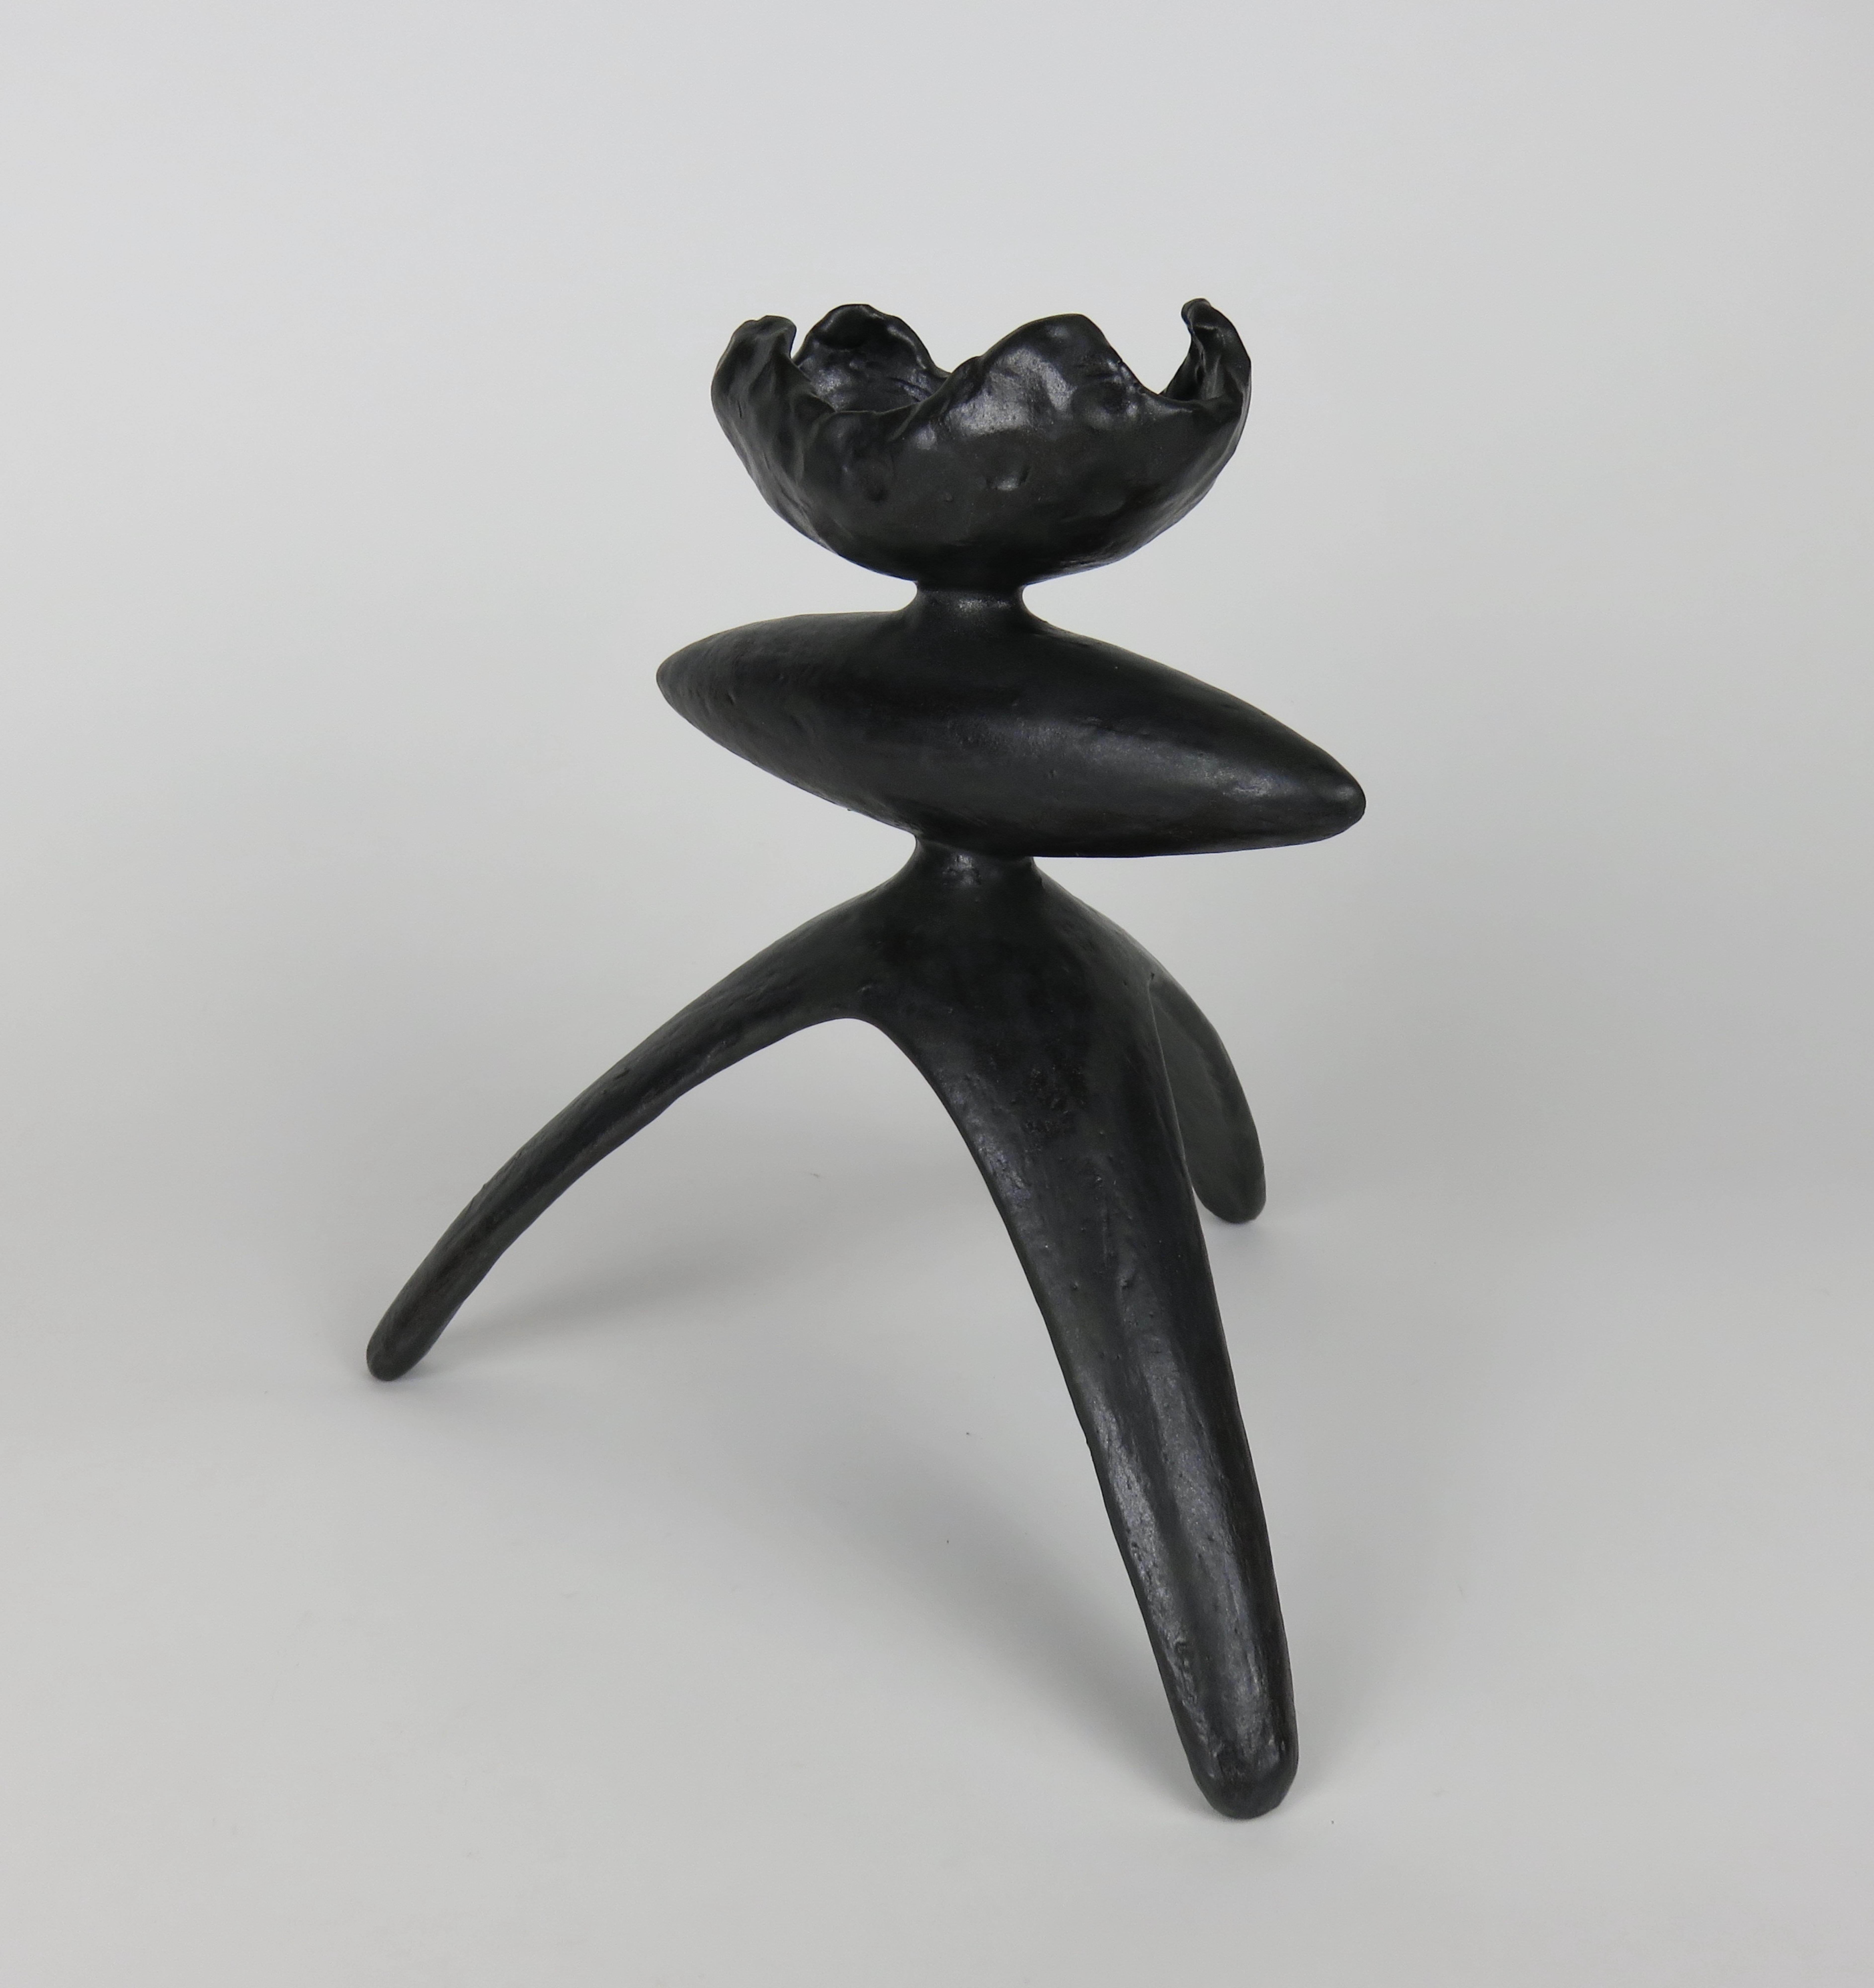 Handgefertigte Keramikskulptur mit schwarzer Glasur. Dieses Stück, eines aus einer Serie von Modern TOTEMS, hat eine gewellte, offene Oberseite, eine längliche Mittelform, dreibeinige Beine und eine üppige schwarze Glasur. Jedes Teil wird von Hand